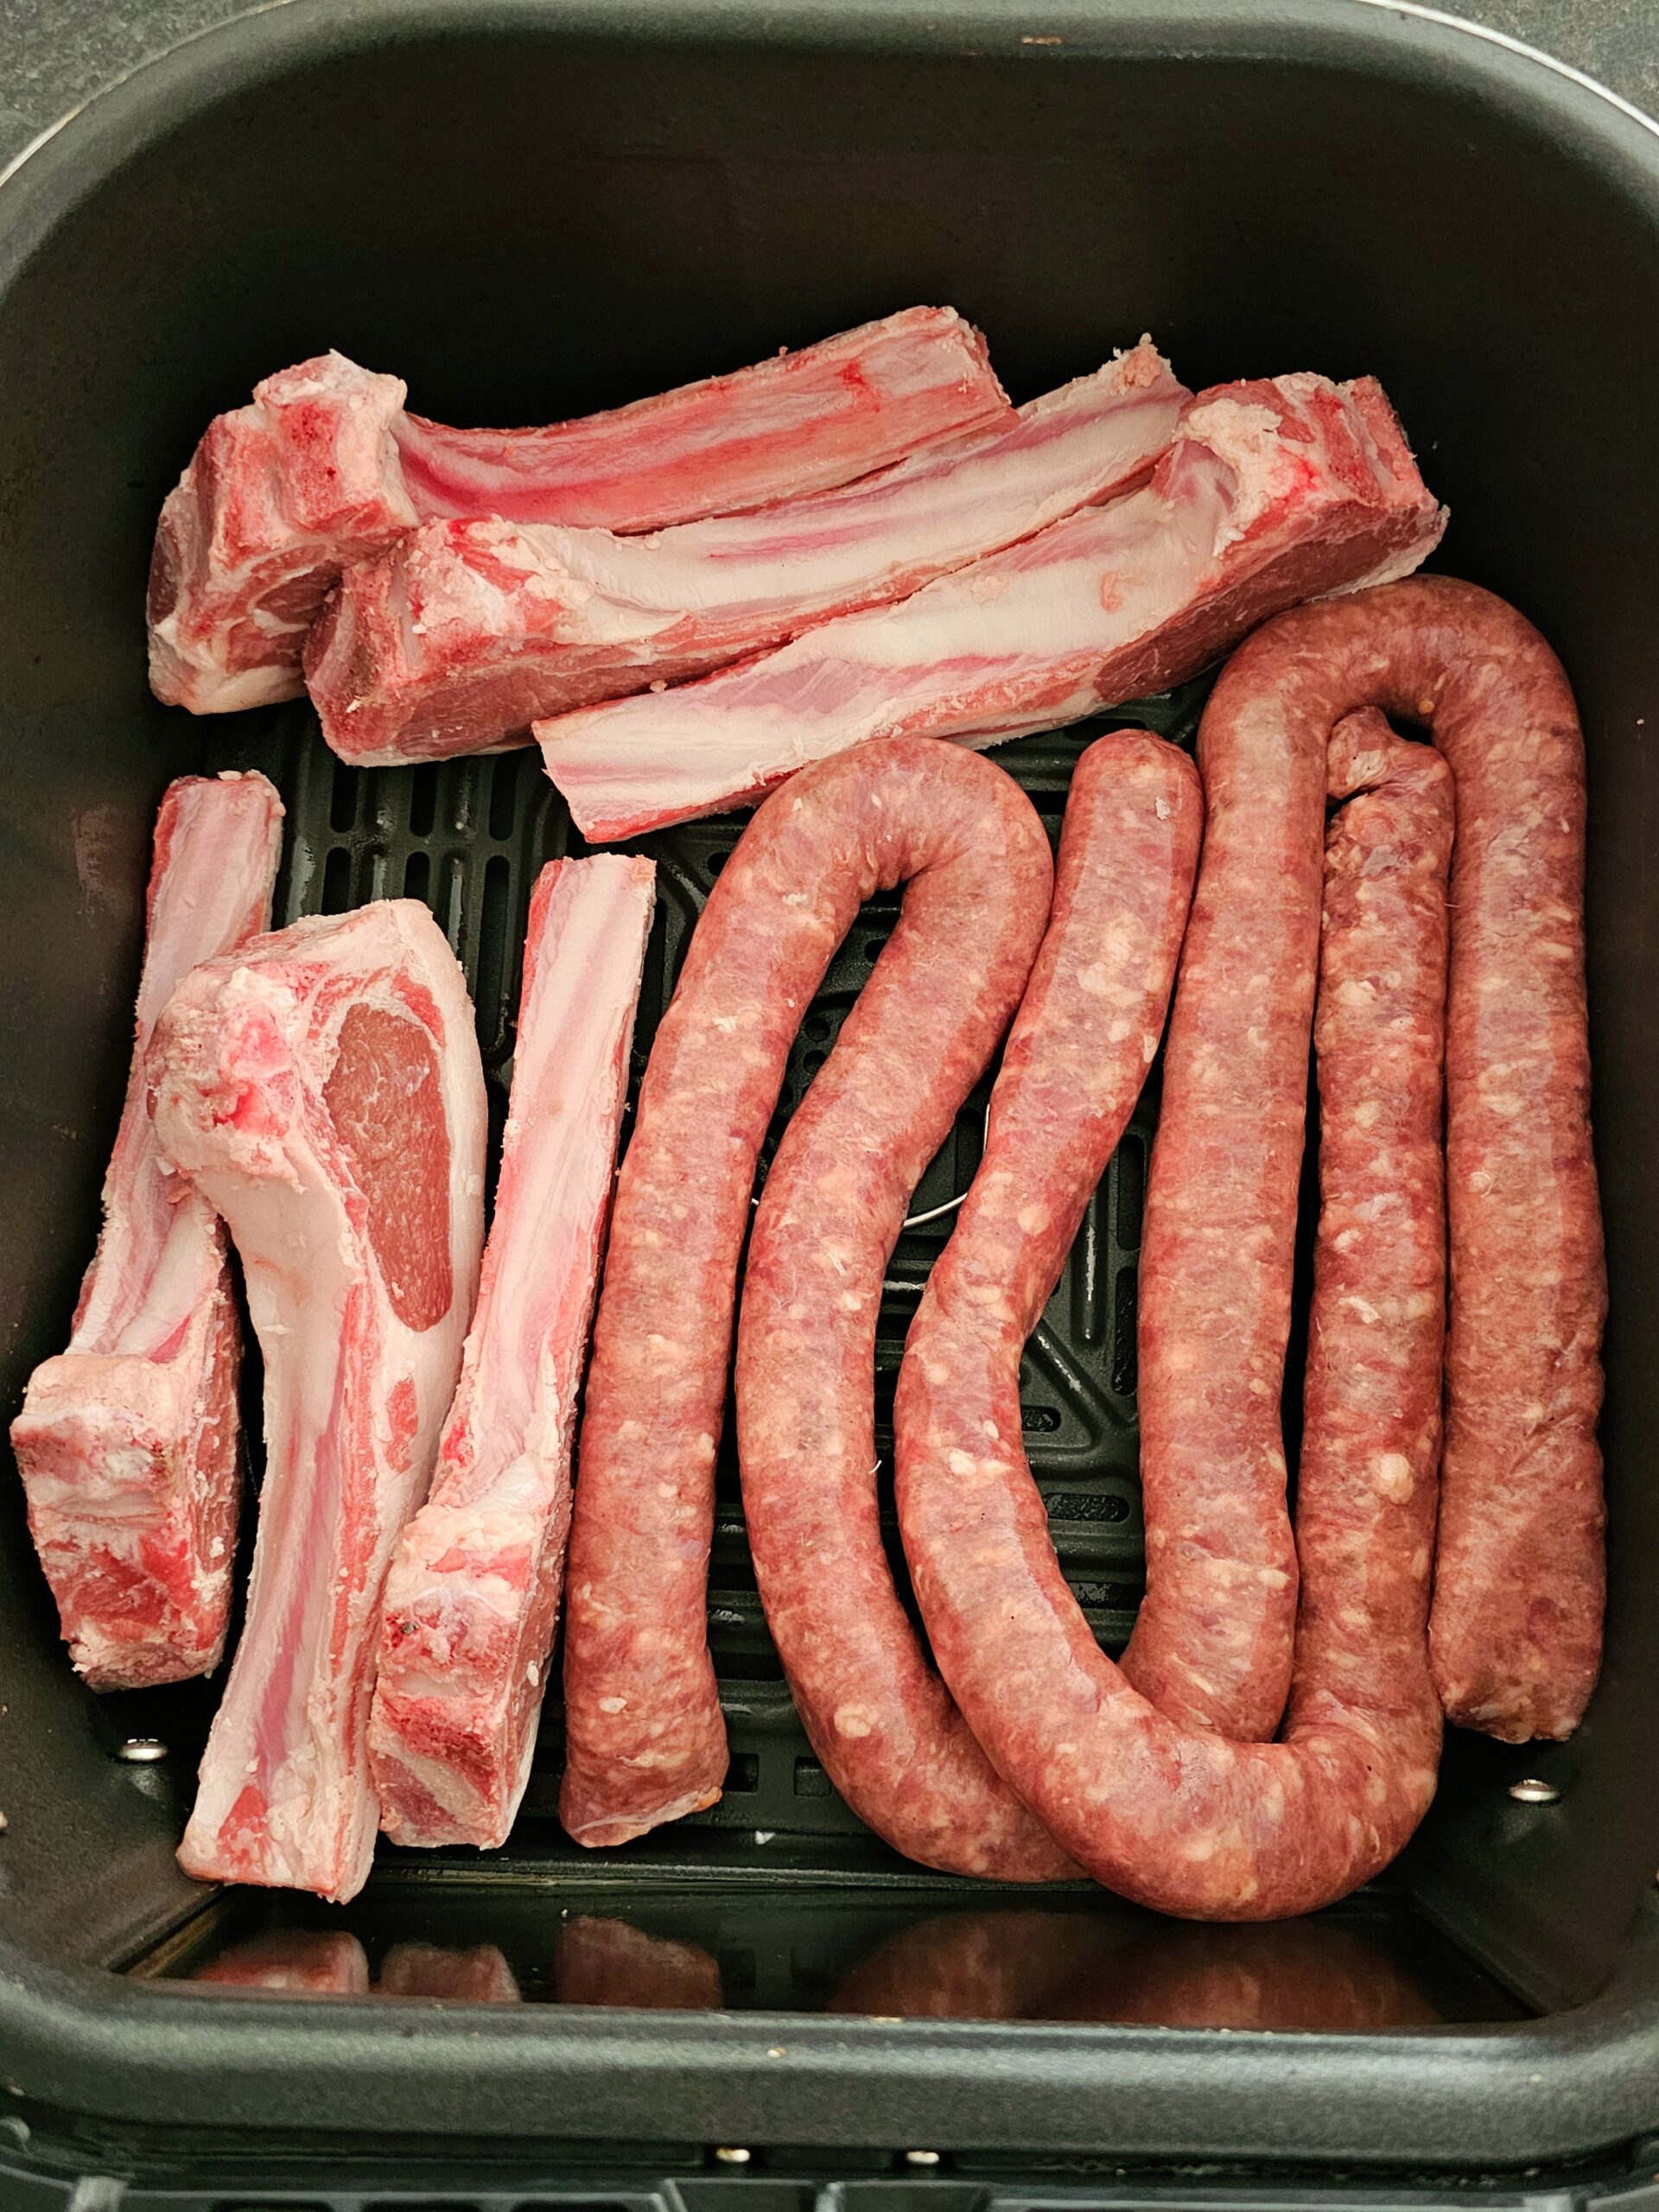 lamb and sausage air fryer recipe